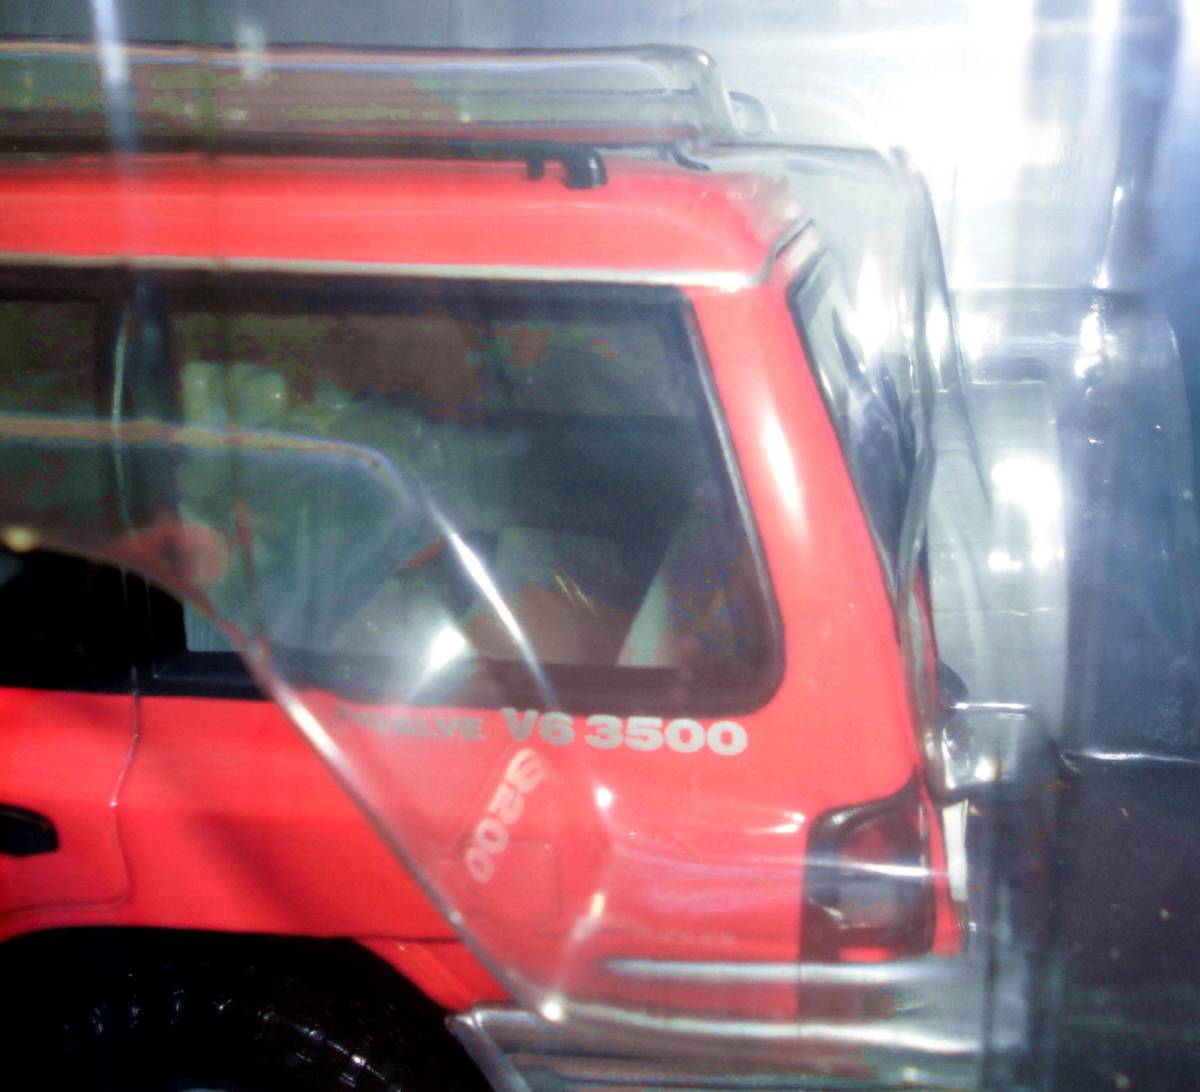 1/18 size] Mitsubishi Pajero 3500 4WD MITSUBISHI MONTERO unopened unused 